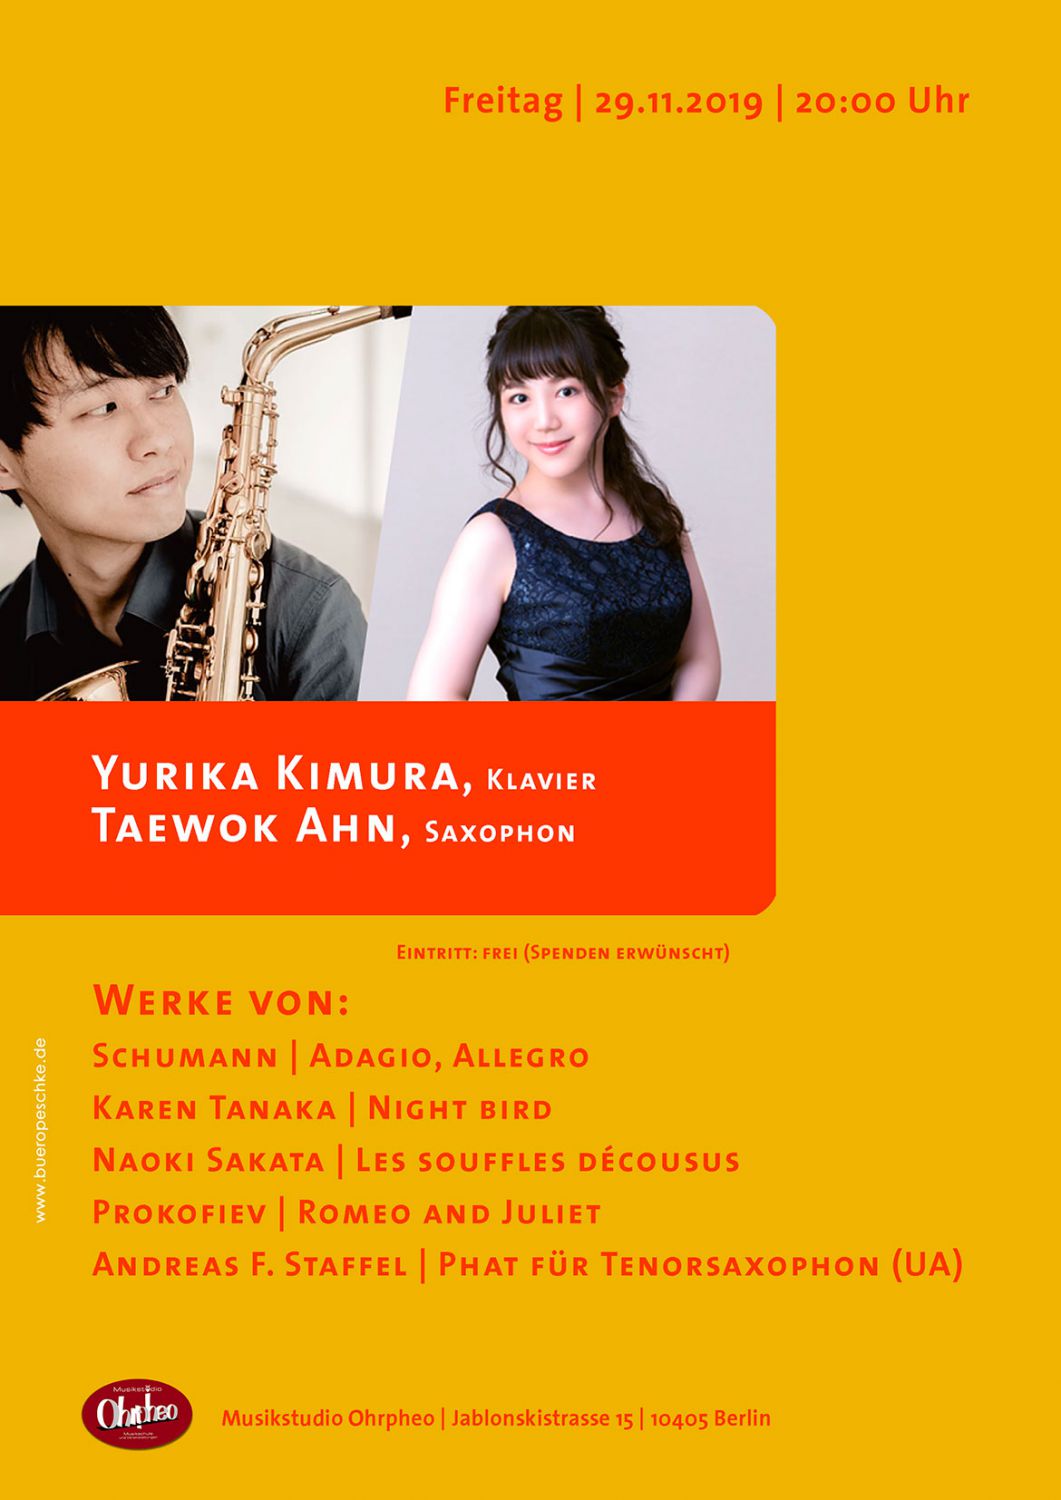 Konzert von Yurika Kimura, Klavier und Taewok Ahn, Saxophon, Ohrpheo Berlin